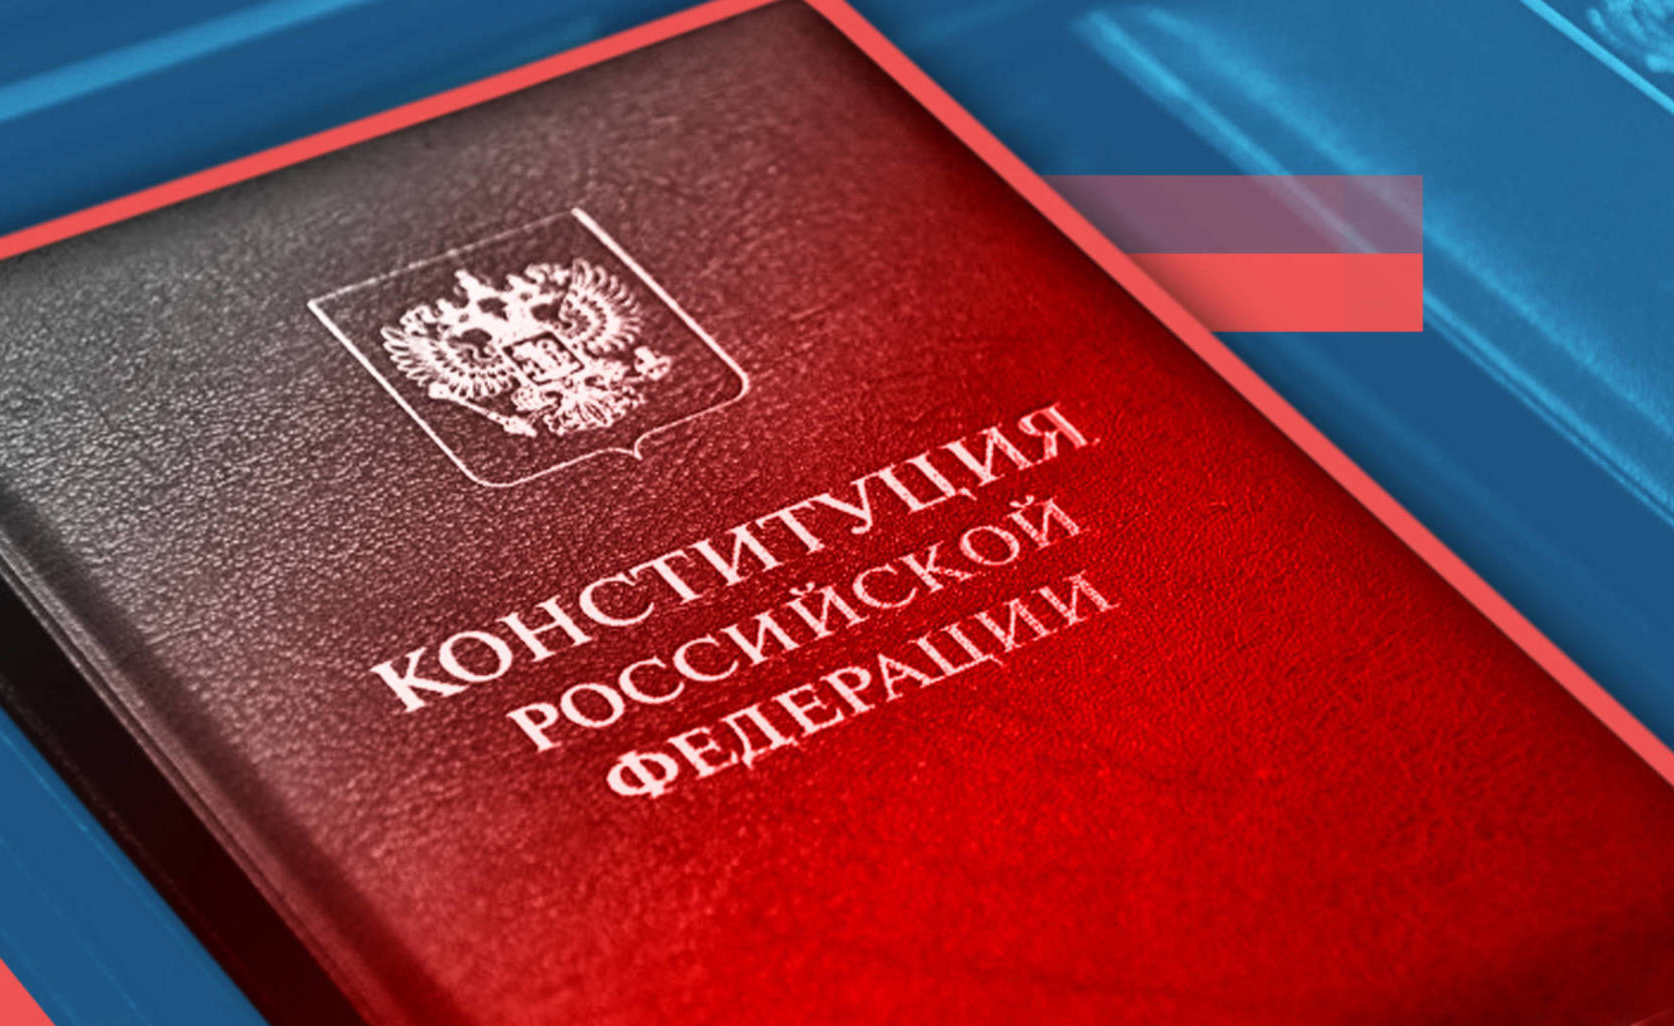 Сегодня Госдума приняла в третьем чтении законопроекты, внесенные Президентом во исполнение обновленных положений Конституции